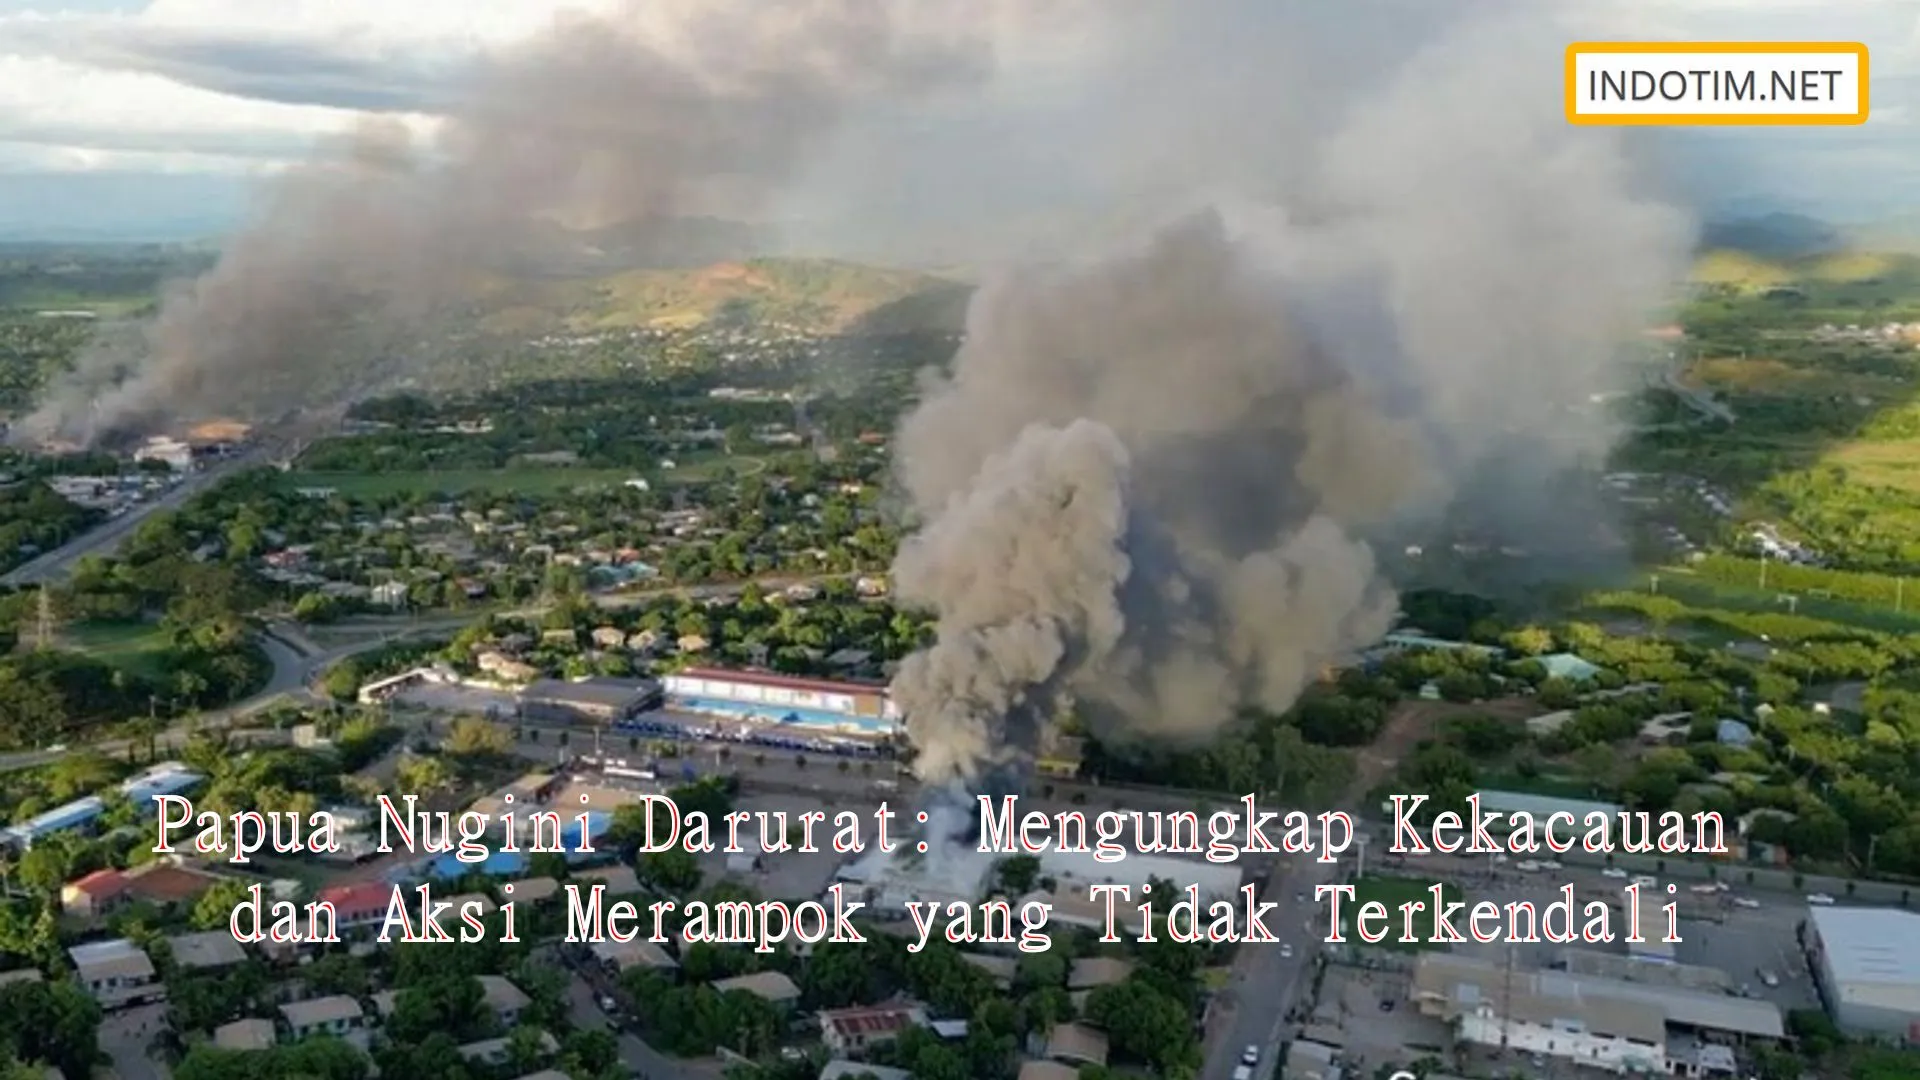 Papua Nugini Darurat: Mengungkap Kekacauan dan Aksi Merampok yang Tidak Terkendali